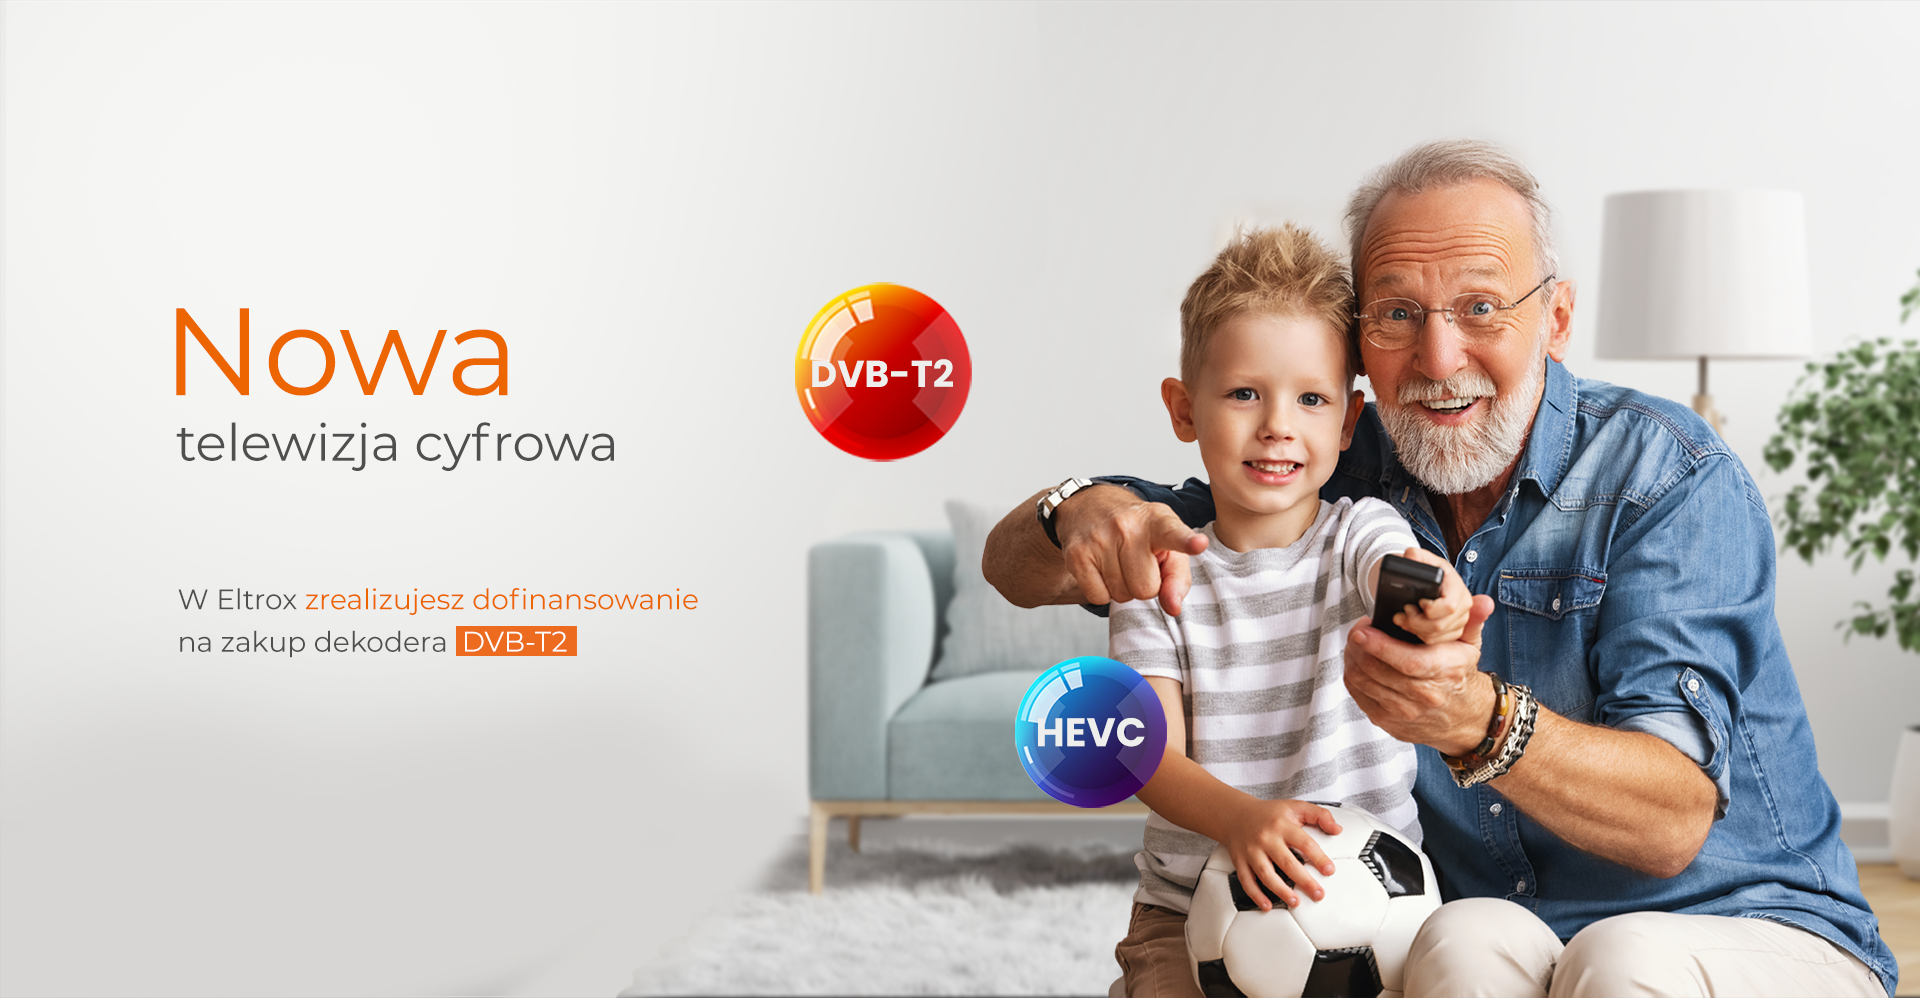 W Eltrox.pl zrealizujesz dopłatę, dofinansowanie do nowego dekodera i tunera DVB-T2 HEVC. Eltrox.pl jest autoryzowanym sprzedawcą dekoderów i tunerów z obsługą DVB-T2 HEVC.